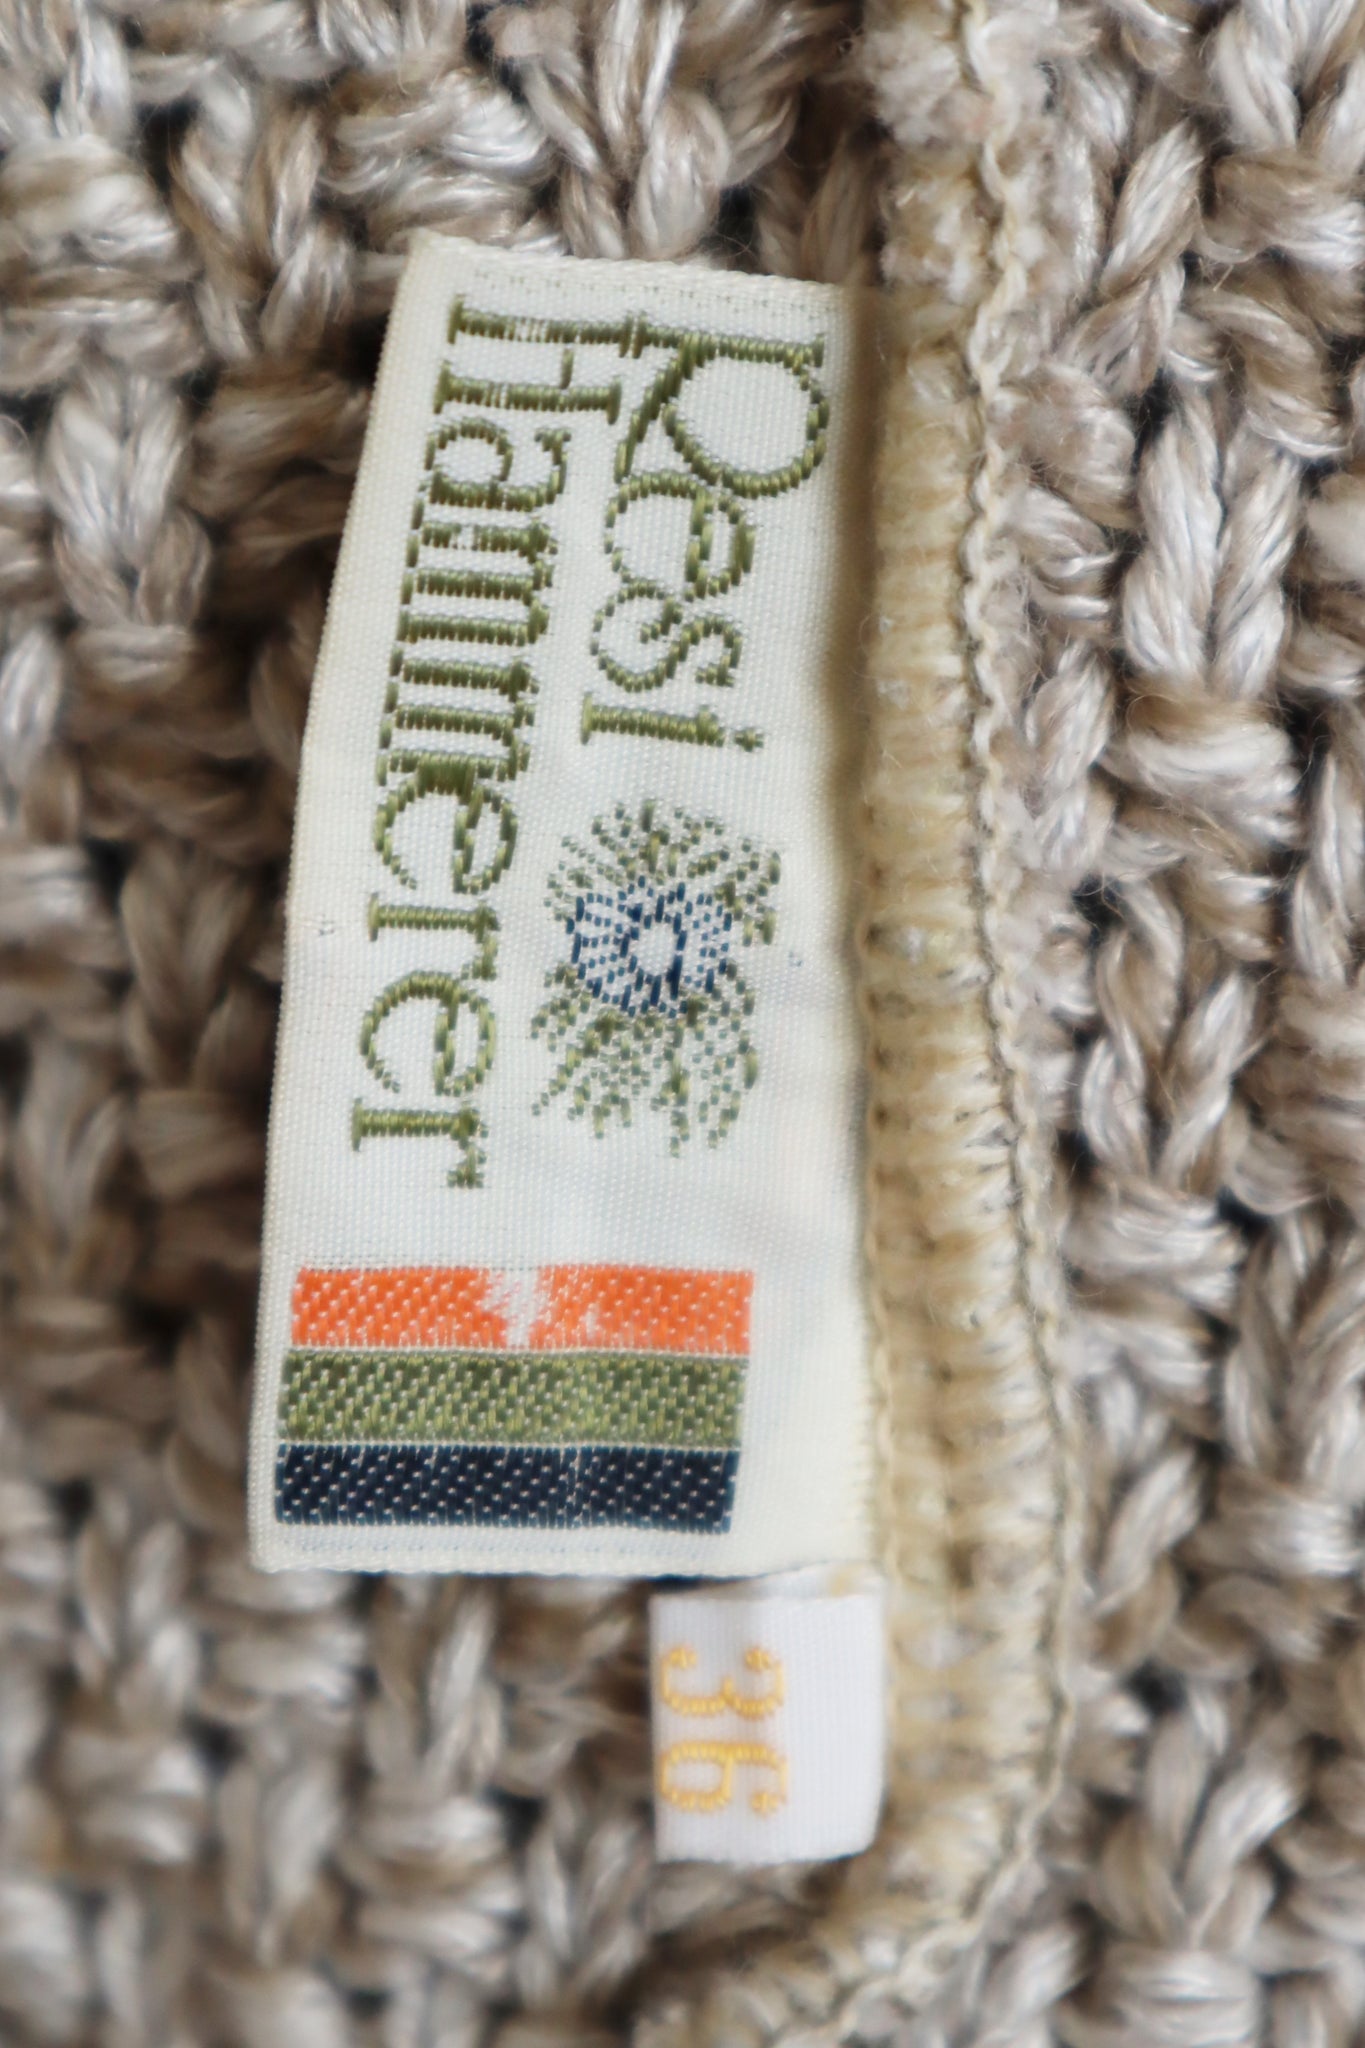 80s Austrian knit Linen Cardigan Beige